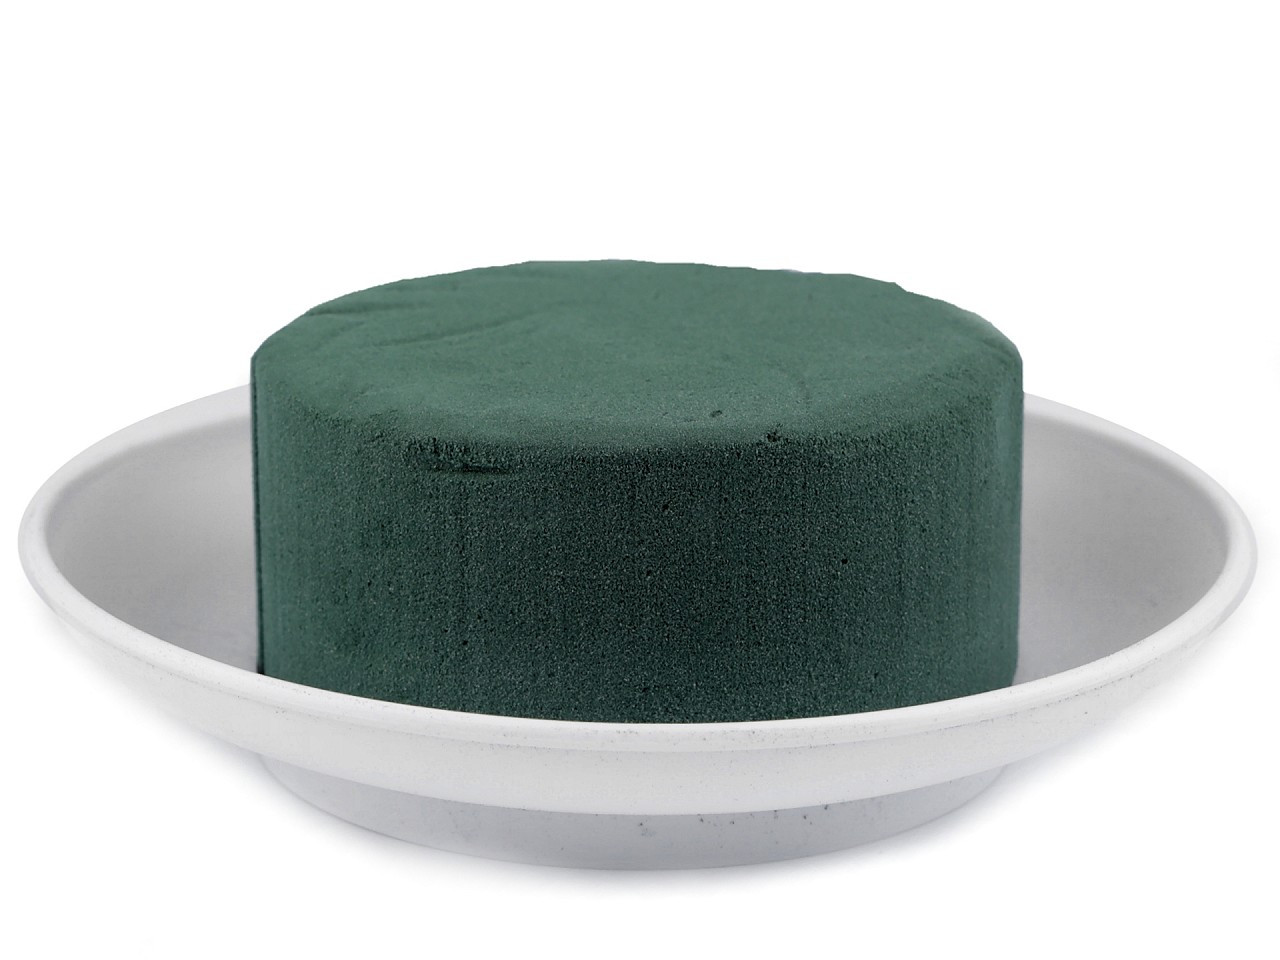 Aranžovací hmota Florex s miskou Ø19 cm, barva 1 zelená bílá